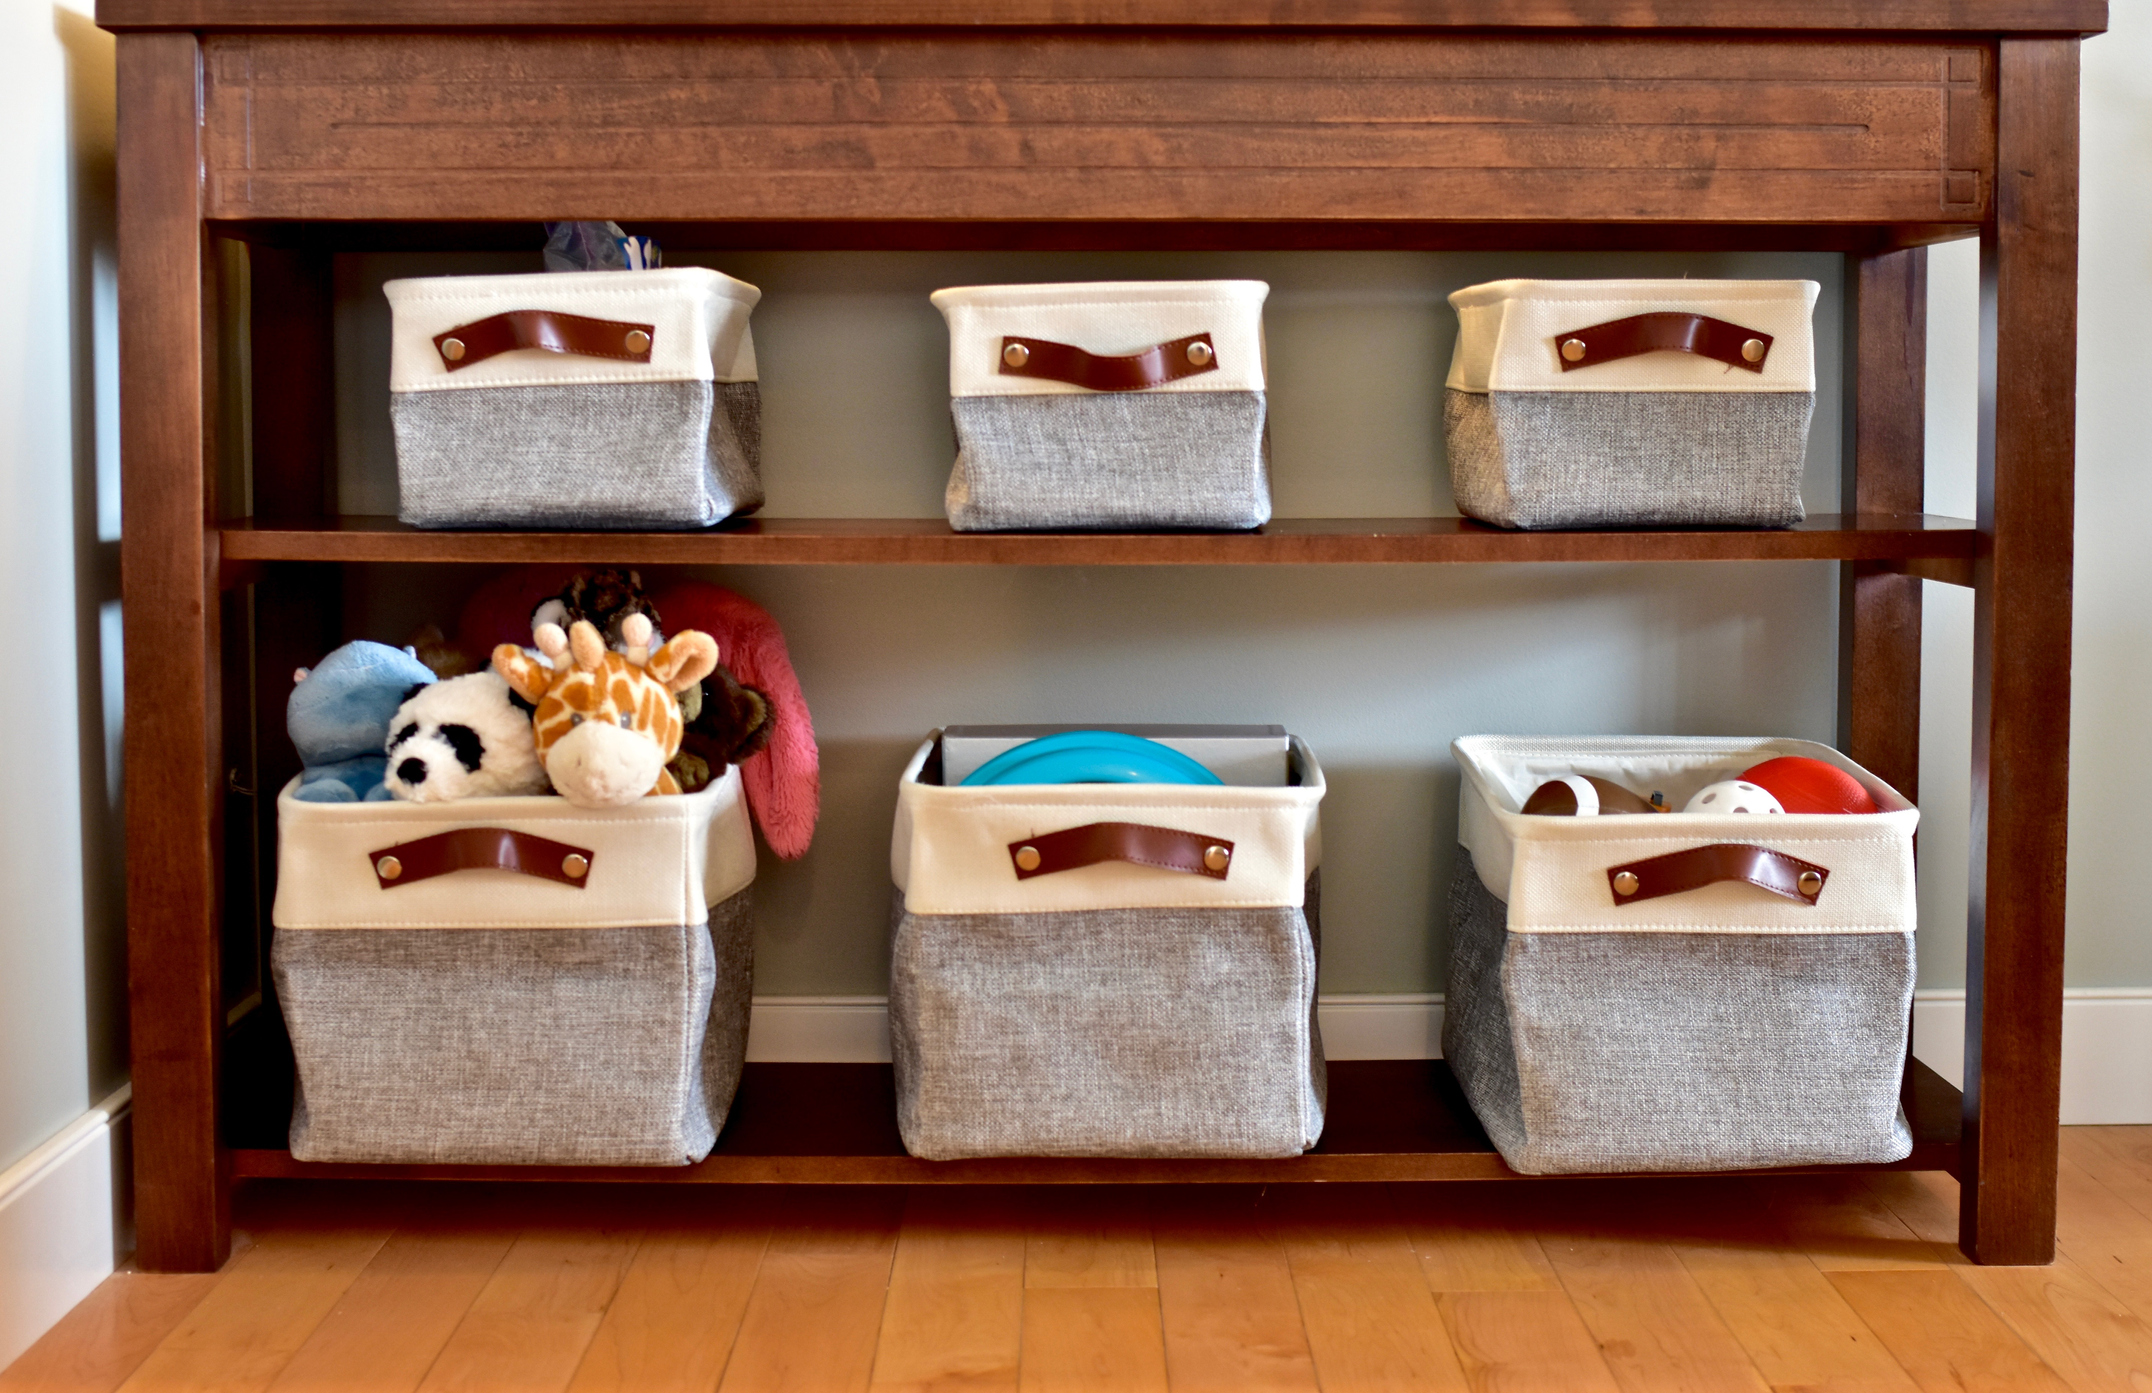 Imagem de caixas organizadoras para brinquedos e roupas de criança.